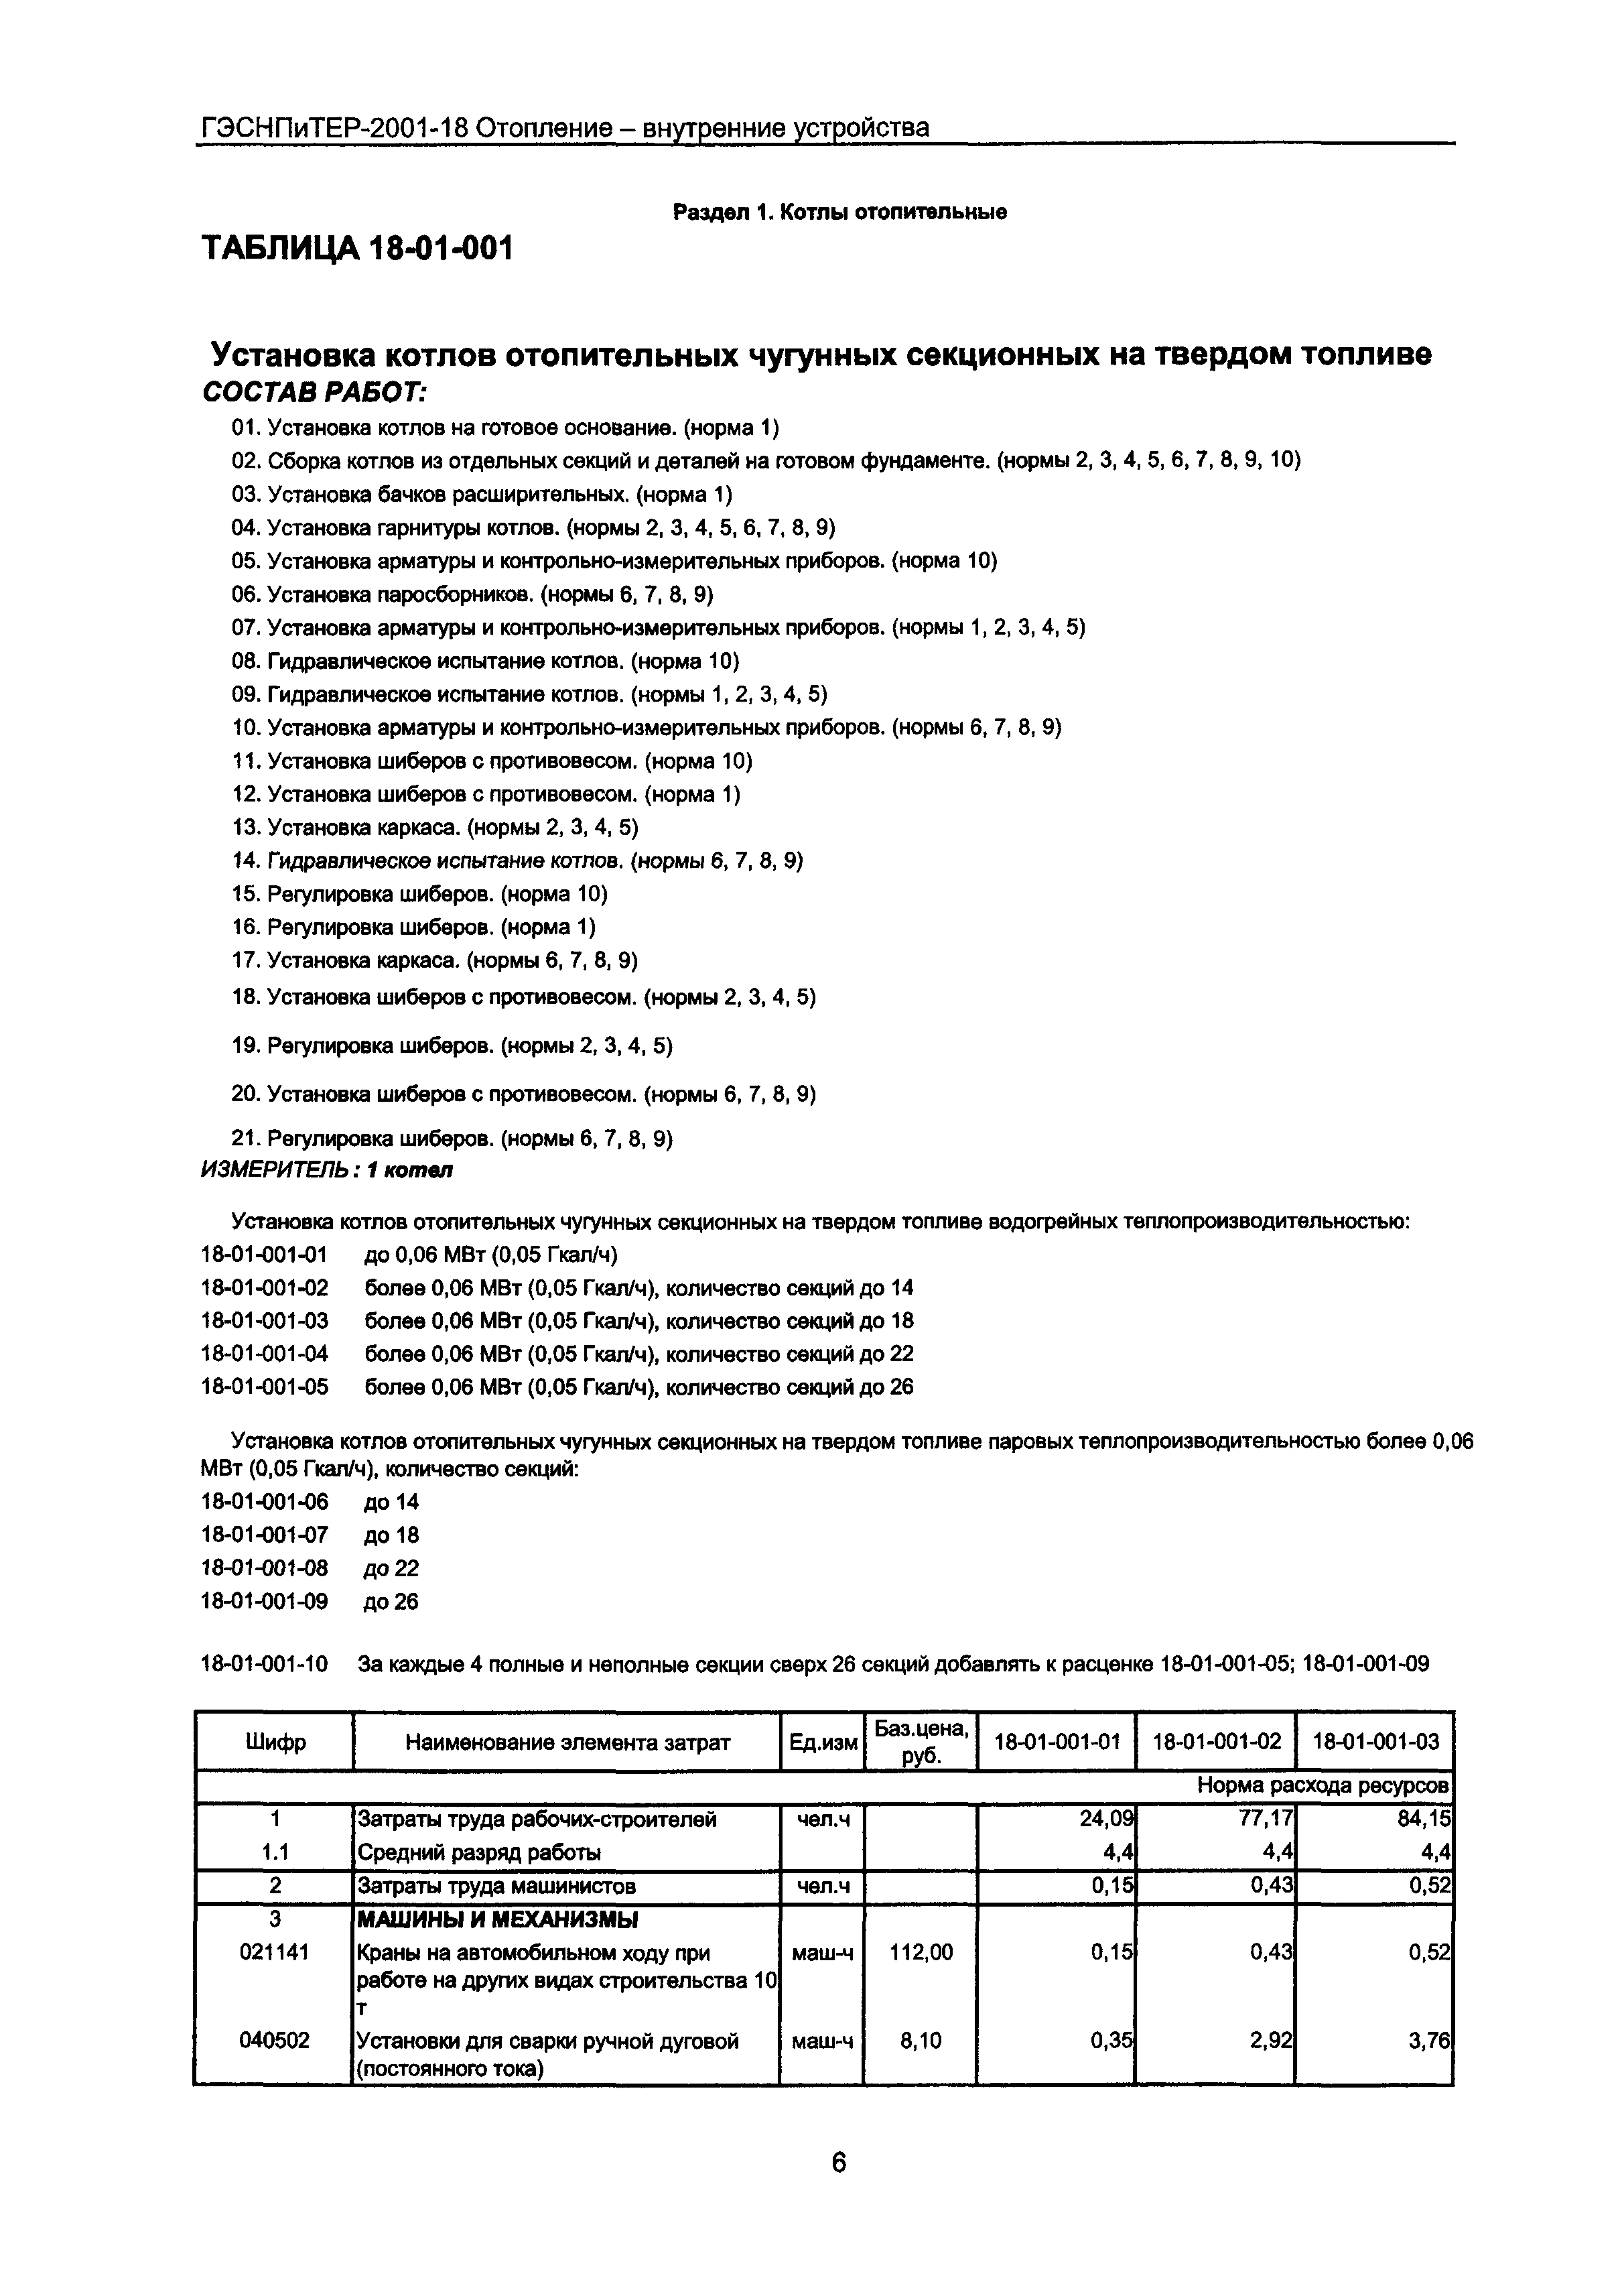 ГЭСНПиТЕР 2001-18 Московской области